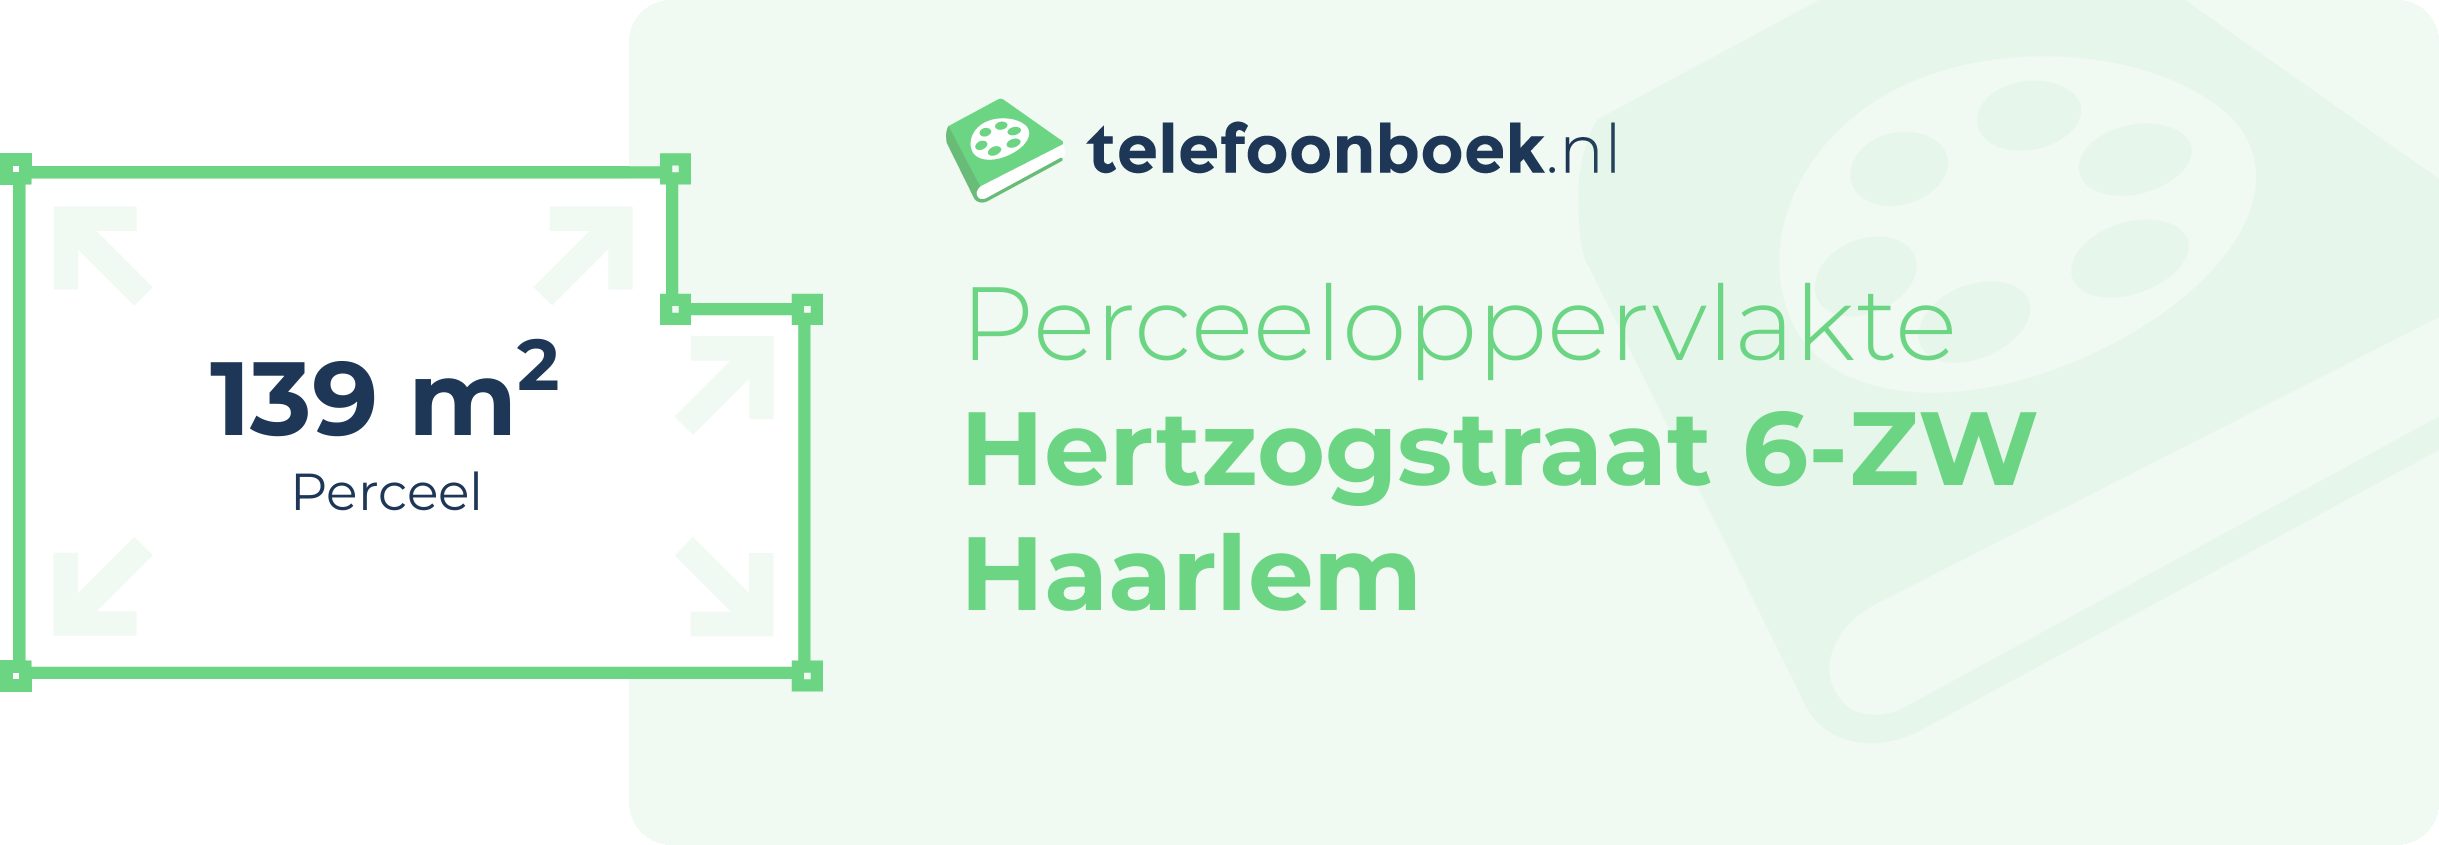 Perceeloppervlakte Hertzogstraat 6-ZW Haarlem